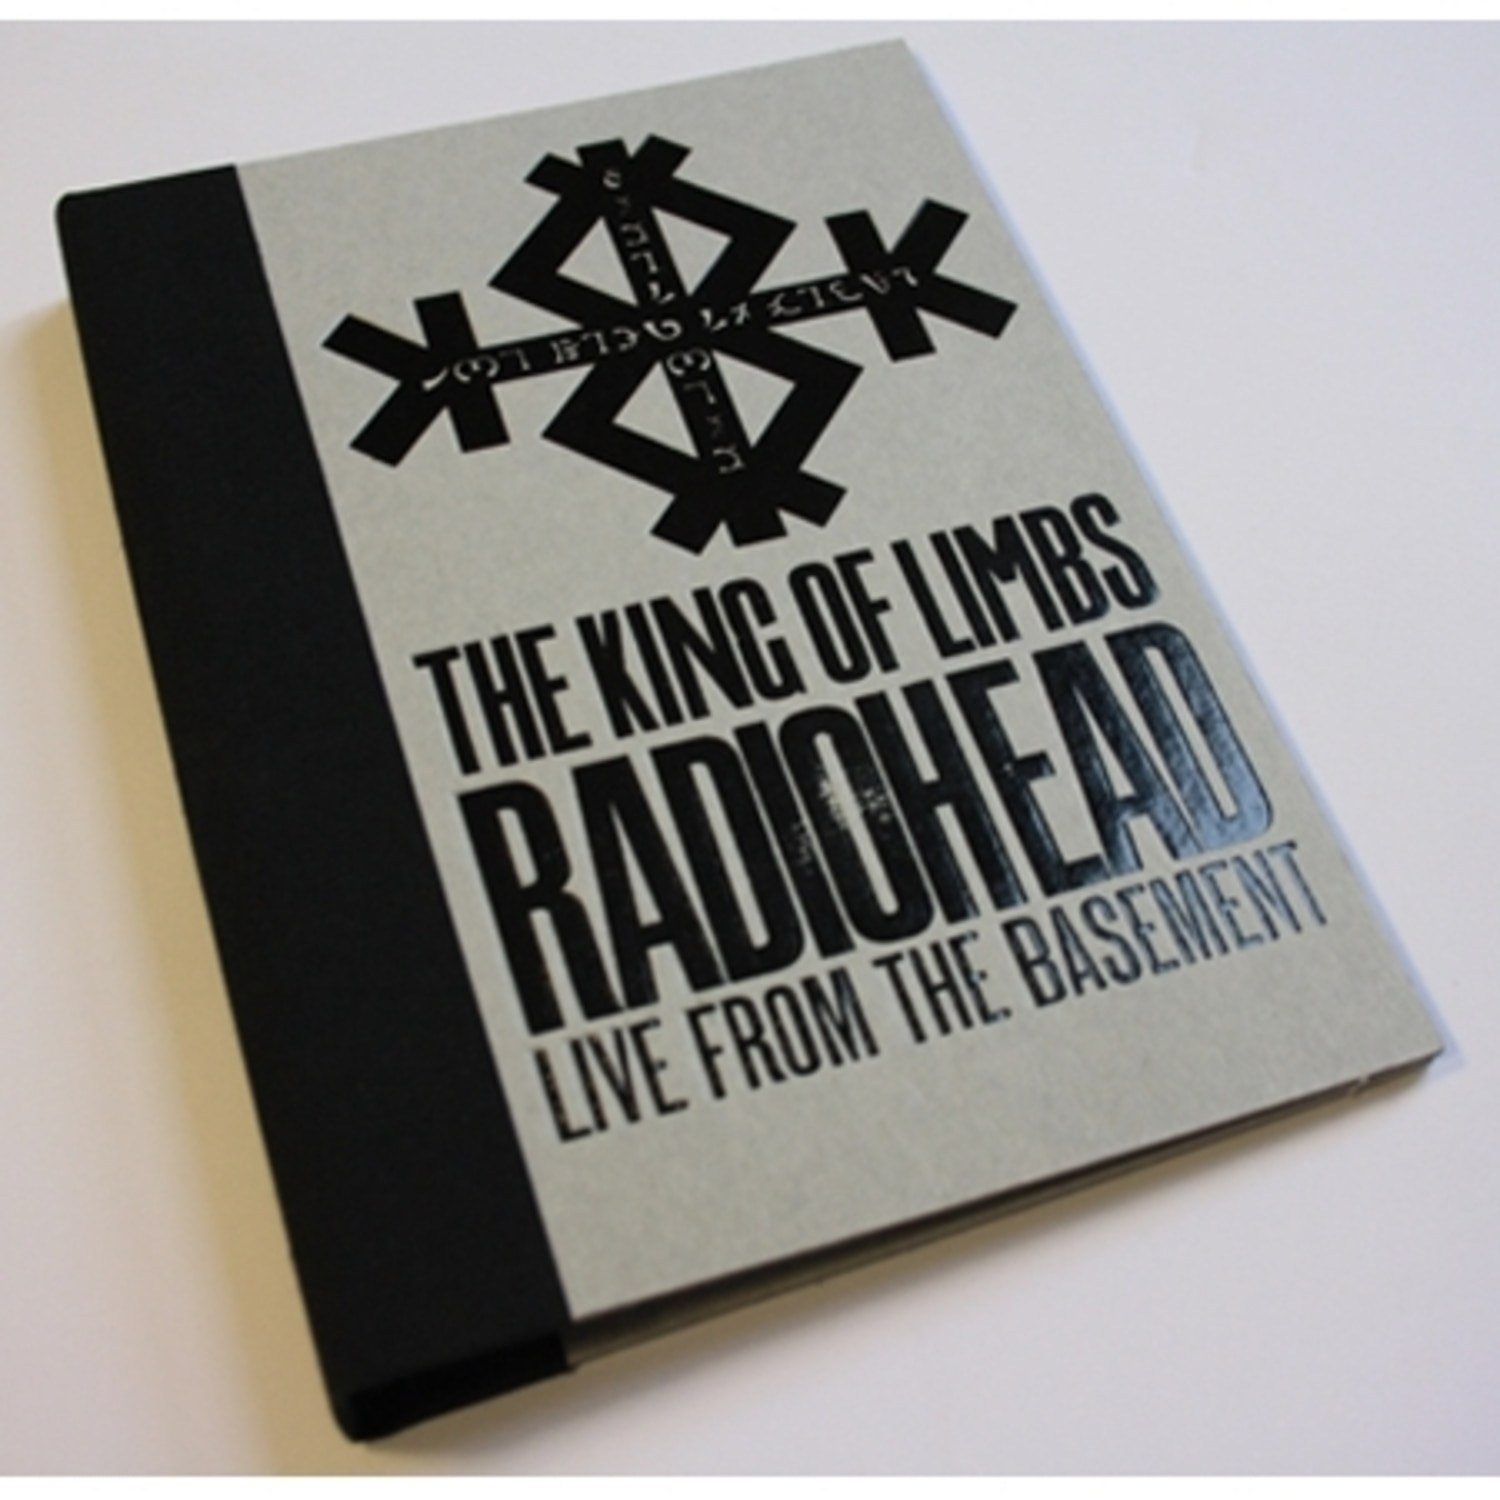 라디오헤드 - 킹 오브 림스 : 라이브 프롬 베이스먼트 (1 DISC)